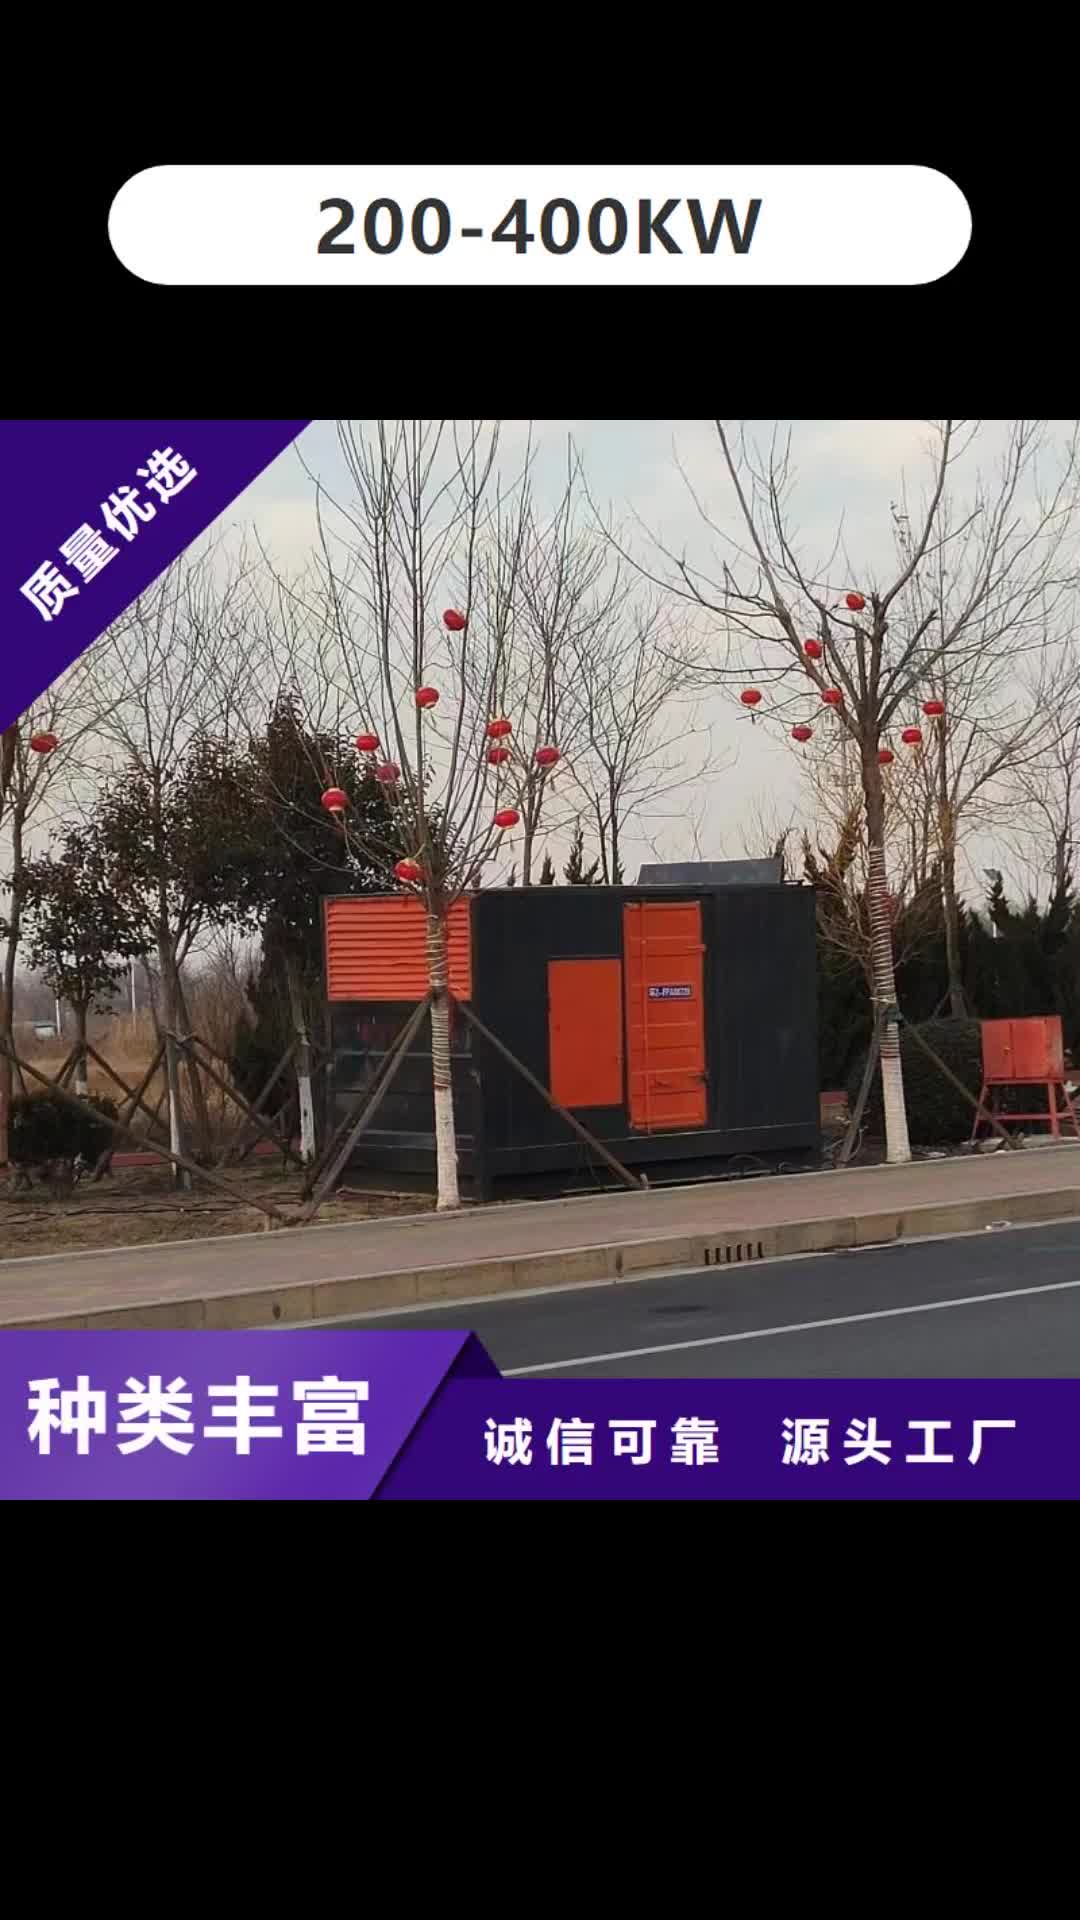 江苏 200-400KW,【300KW发电车租赁】厂家工艺先进